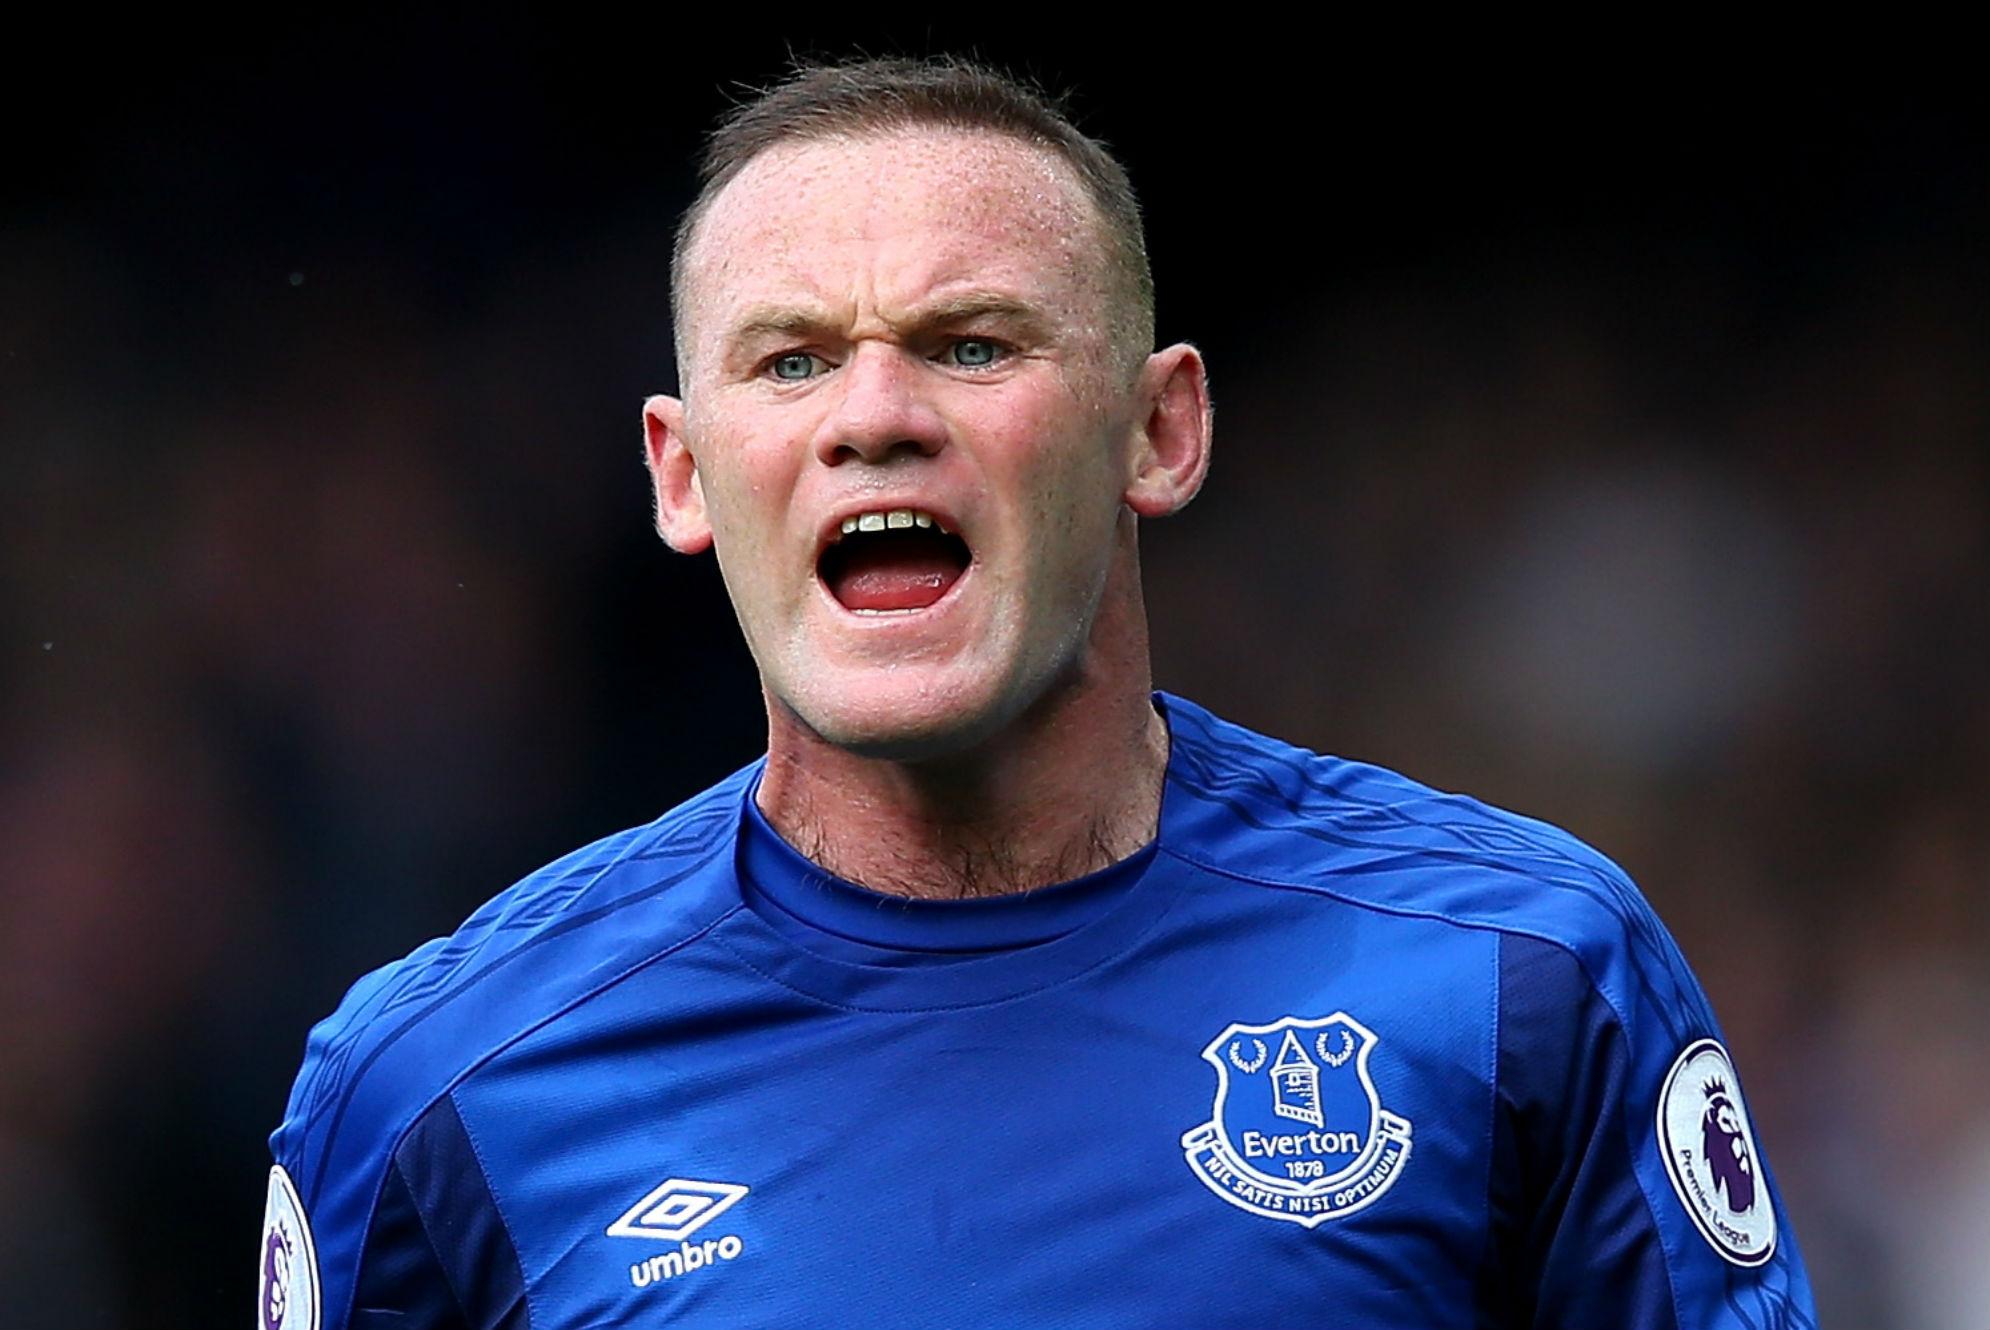 NÓNG: Rooney bất ngờ nghỉ trận gặp Chelsea - Bóng Đá